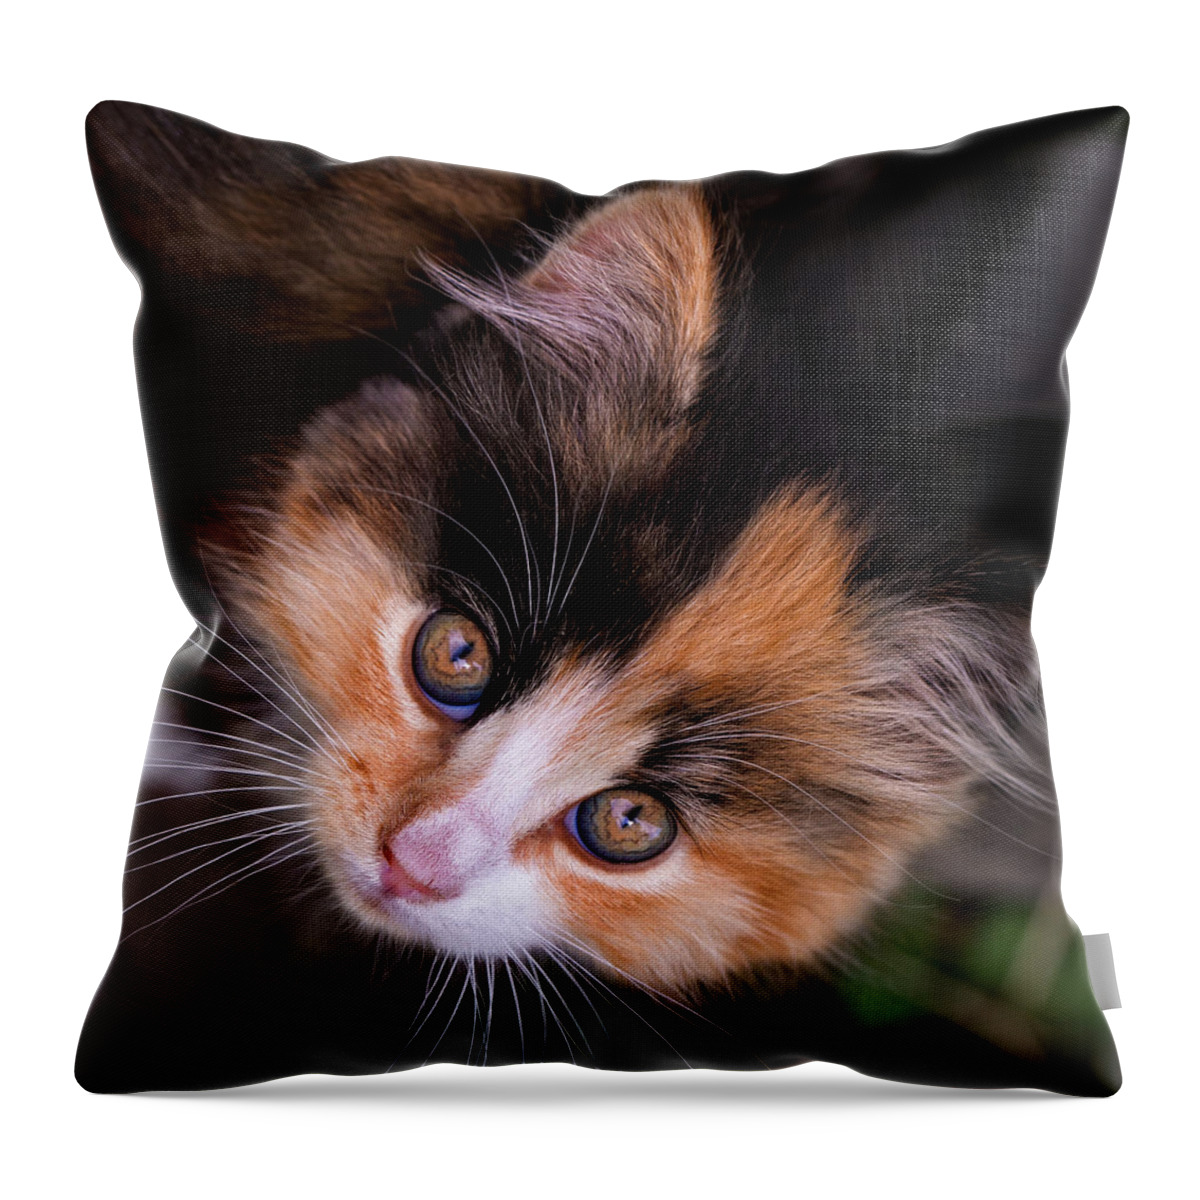 Cat Throw Pillow featuring the photograph Cute Kitty by Jurgen Lorenzen